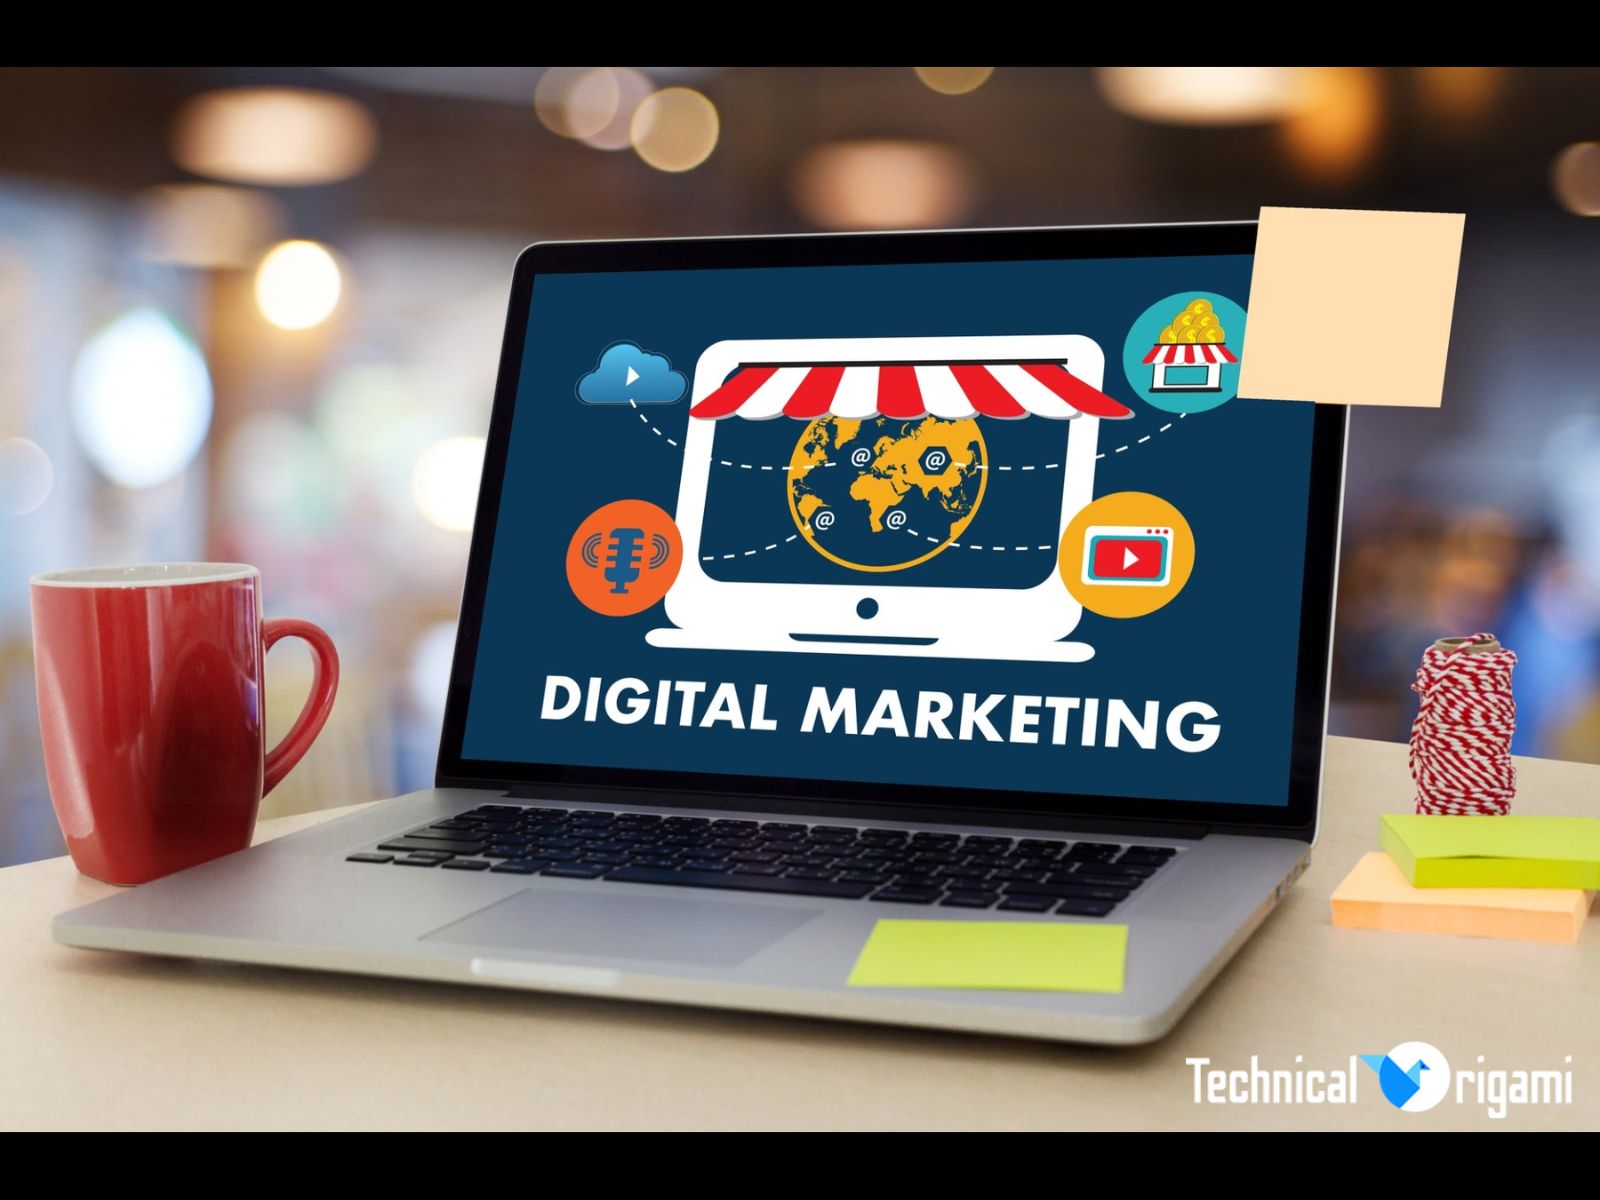 Digital Marketing Agency | Technical Origami